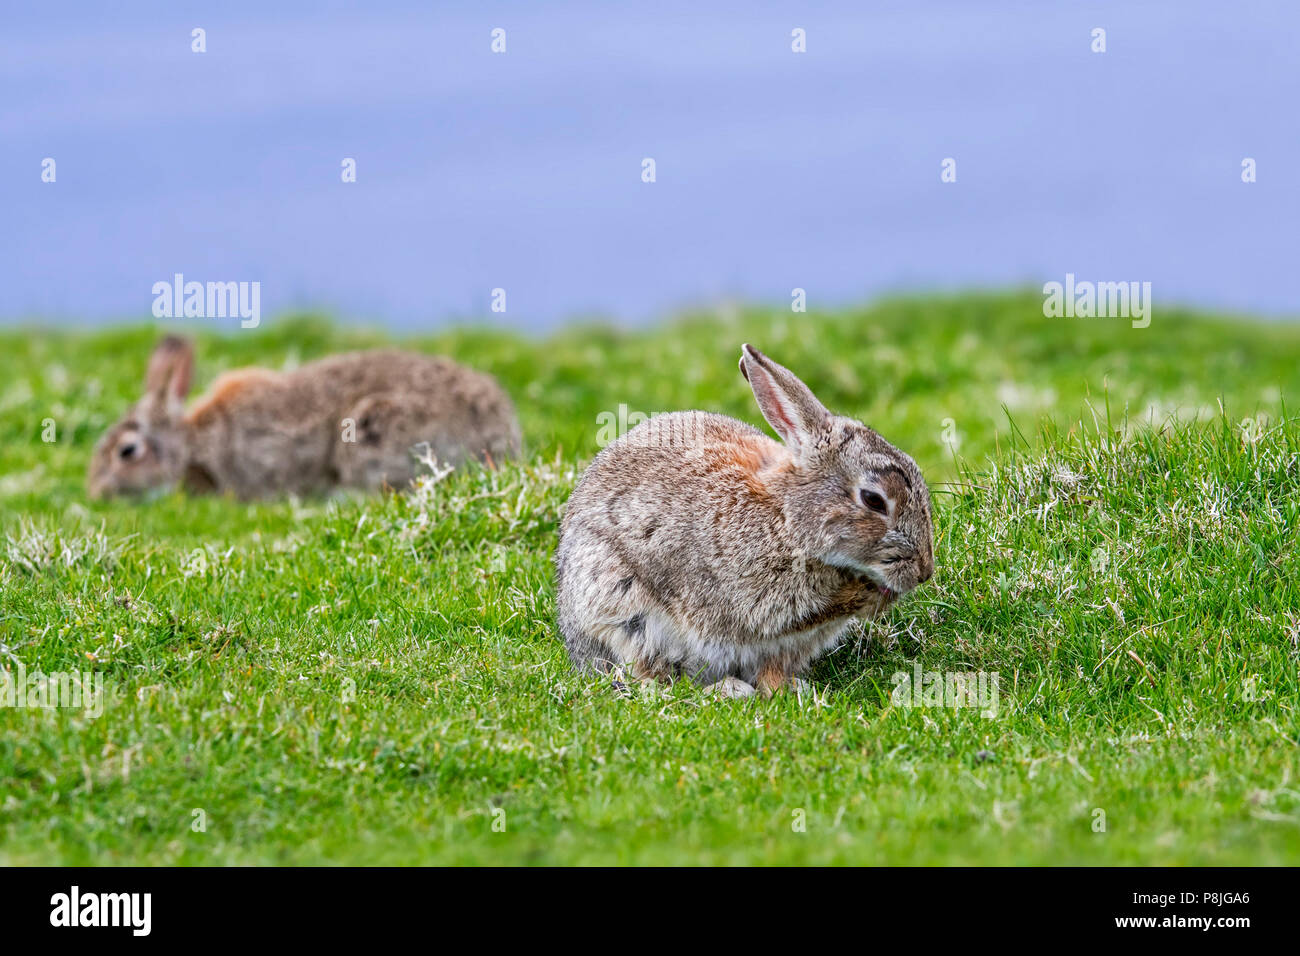 Deux lapins (Oryctolagus cuniculus) et le pâturage de la patte avant de fourrure de toilettage Banque D'Images